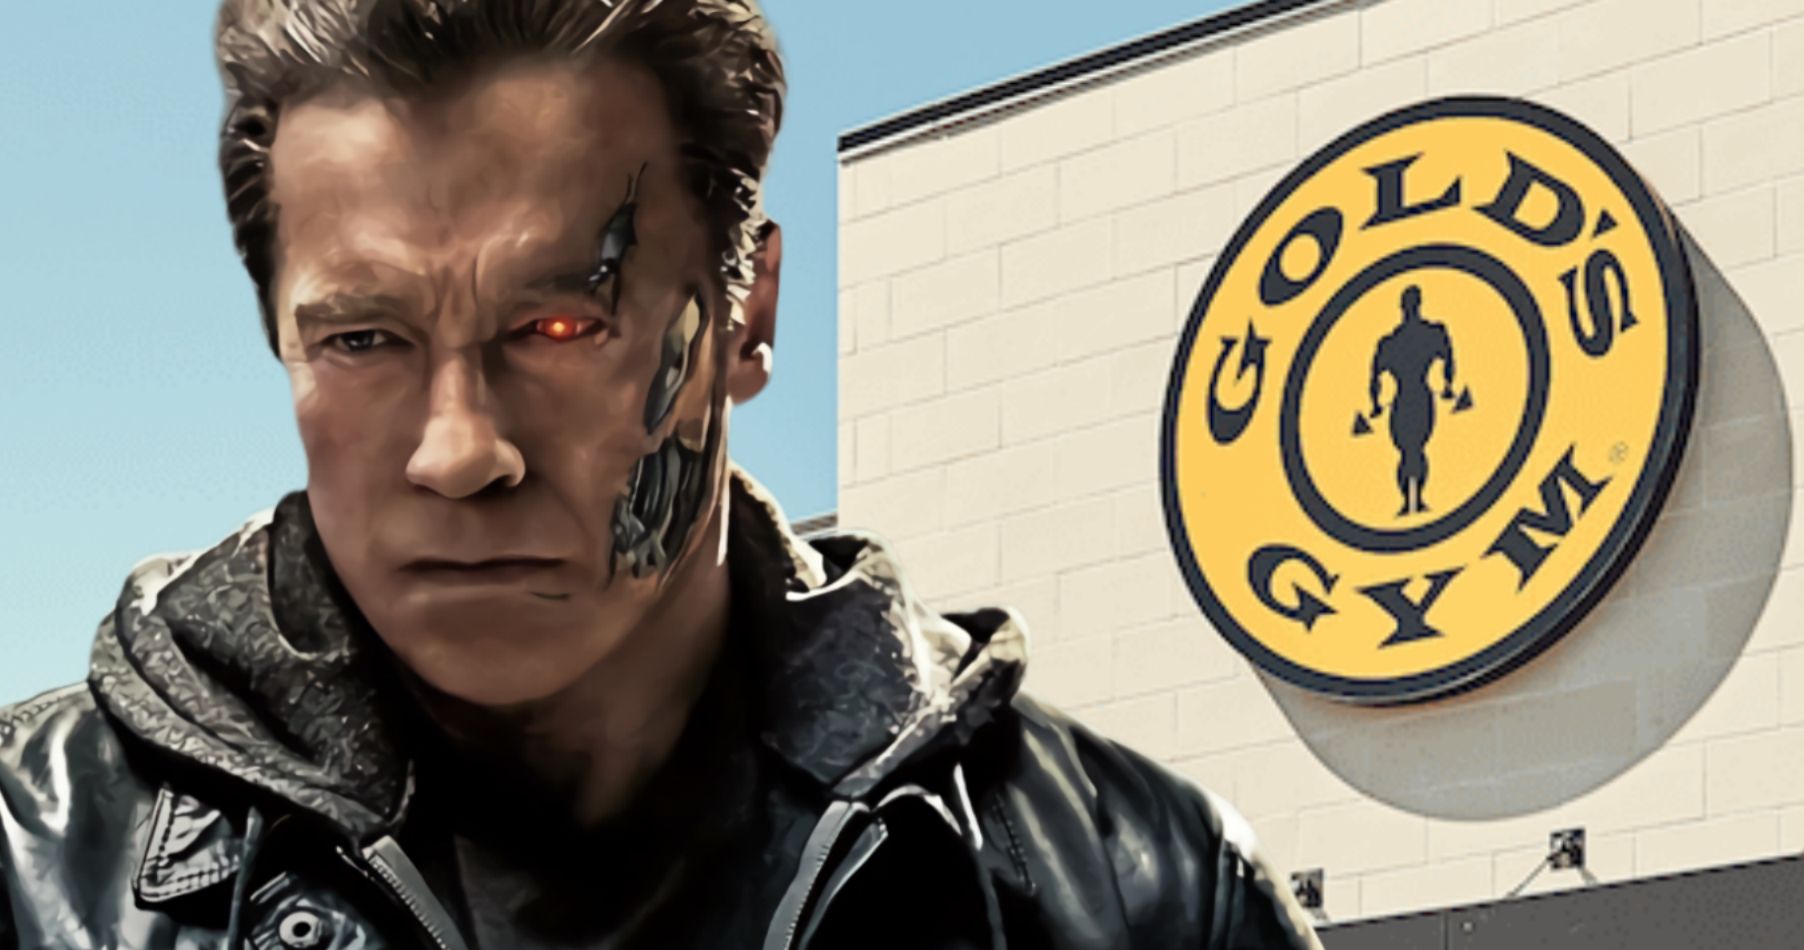 Arnold Schwarzenegger Says Hasta La Vista to Gold's Gym as Masks Weren't Required